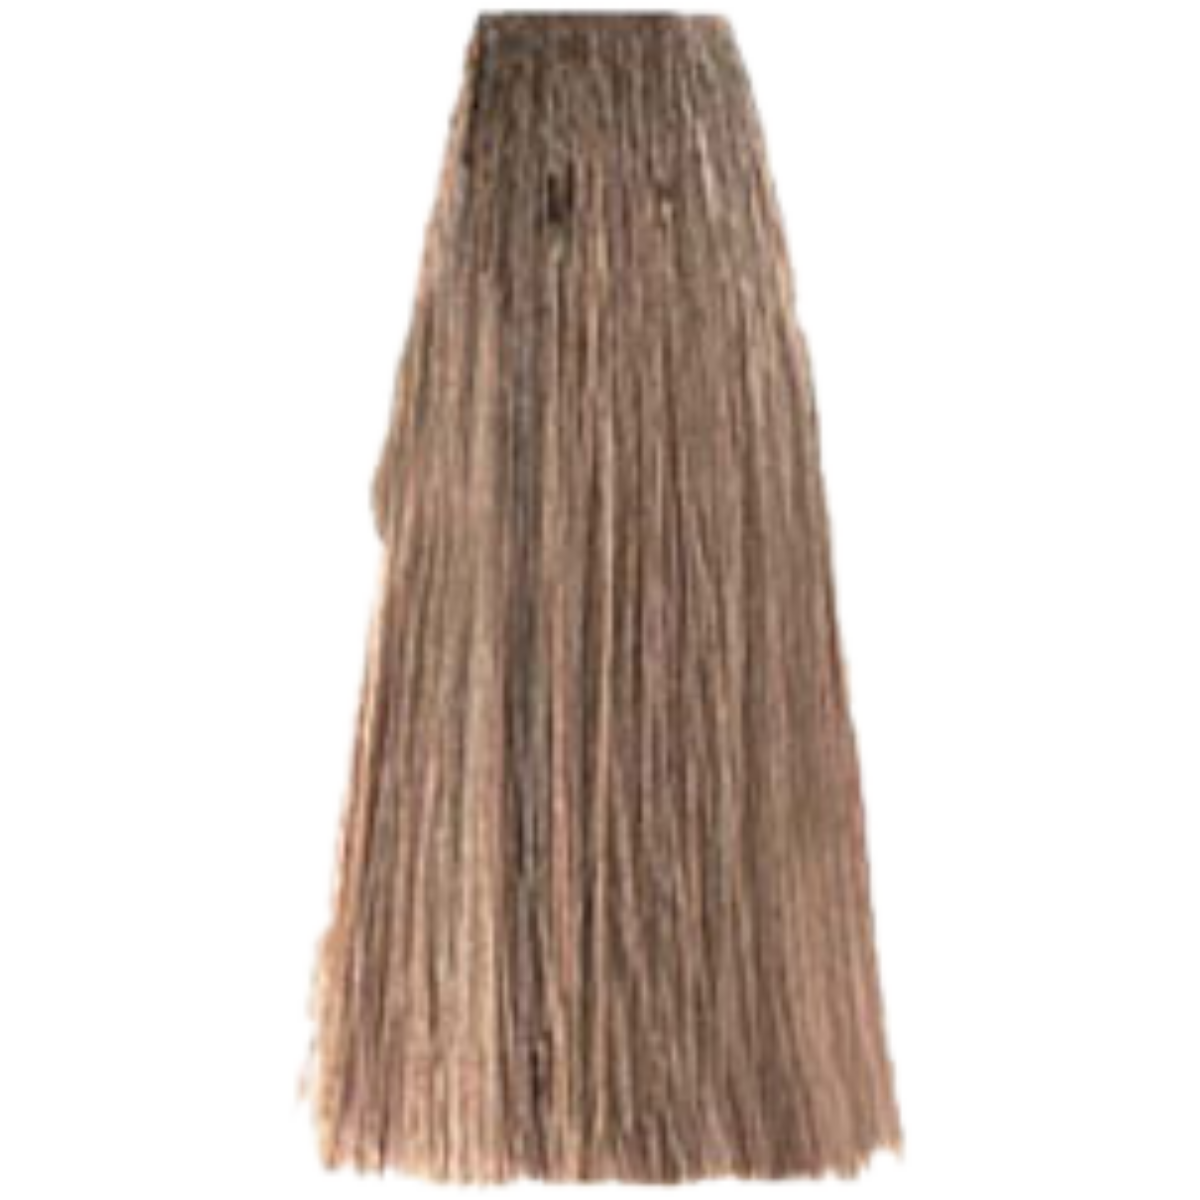 צבע שיער 8.13 LIGHT BEIGE BLONDE פארמויטה FarmaVita צבע לשיער 100 גרם